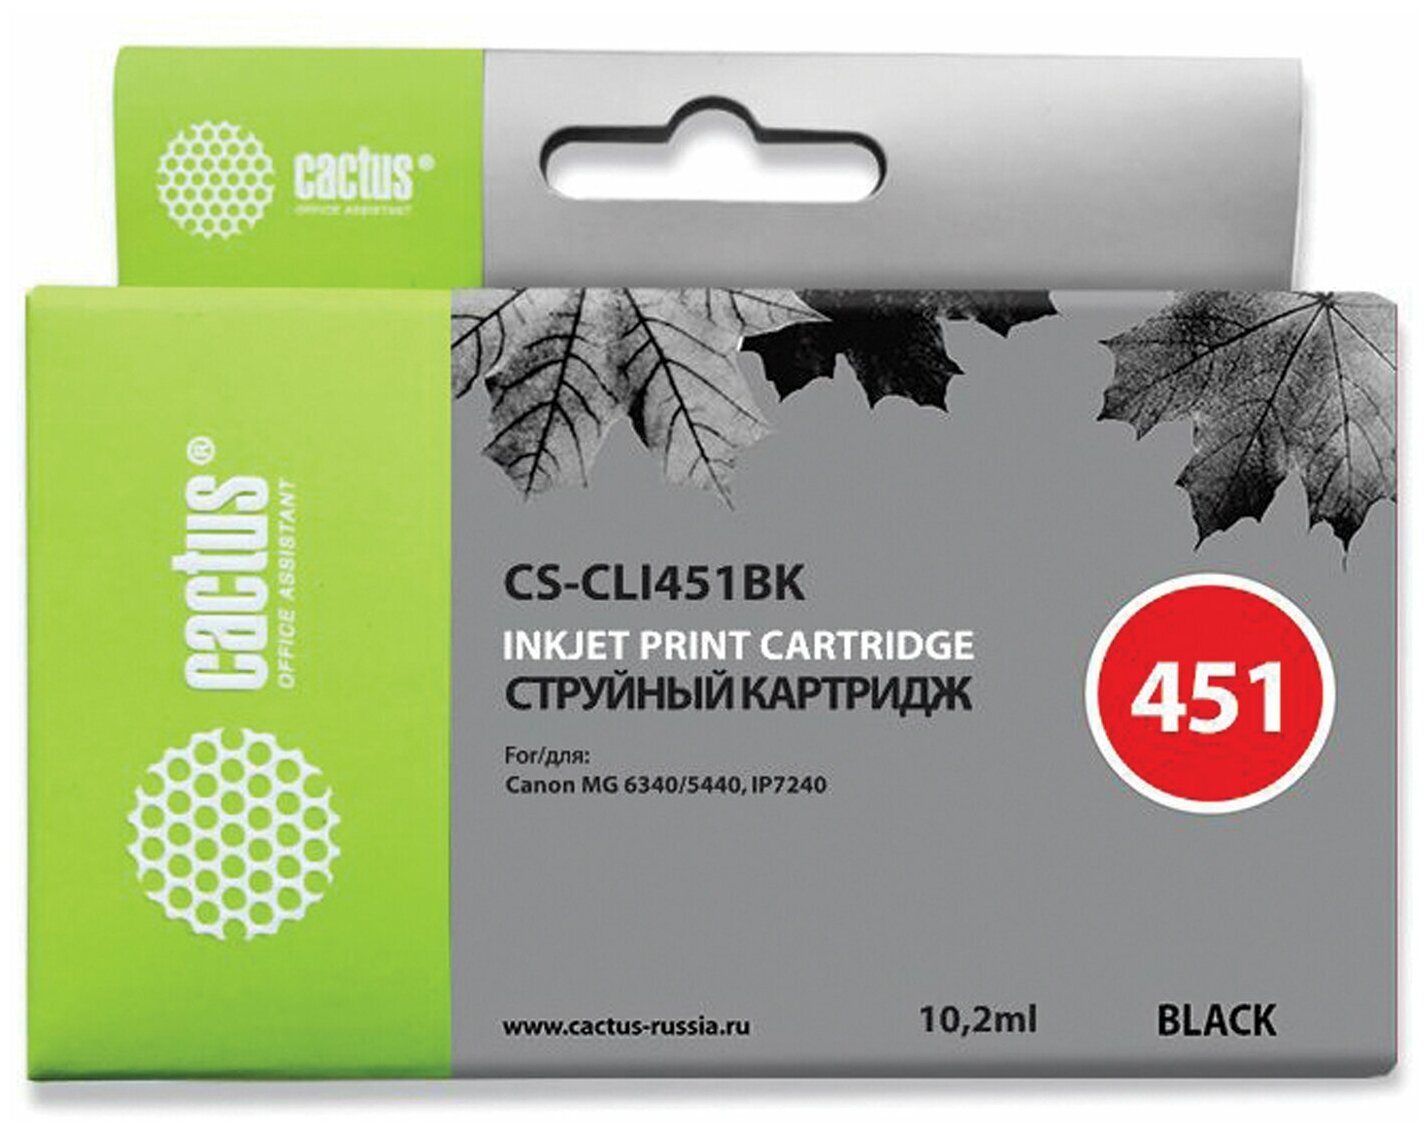 Картридж струйный CACTUS (CS-CLI451BK) для CANON Pixma iP7240, черный - 1 шт.